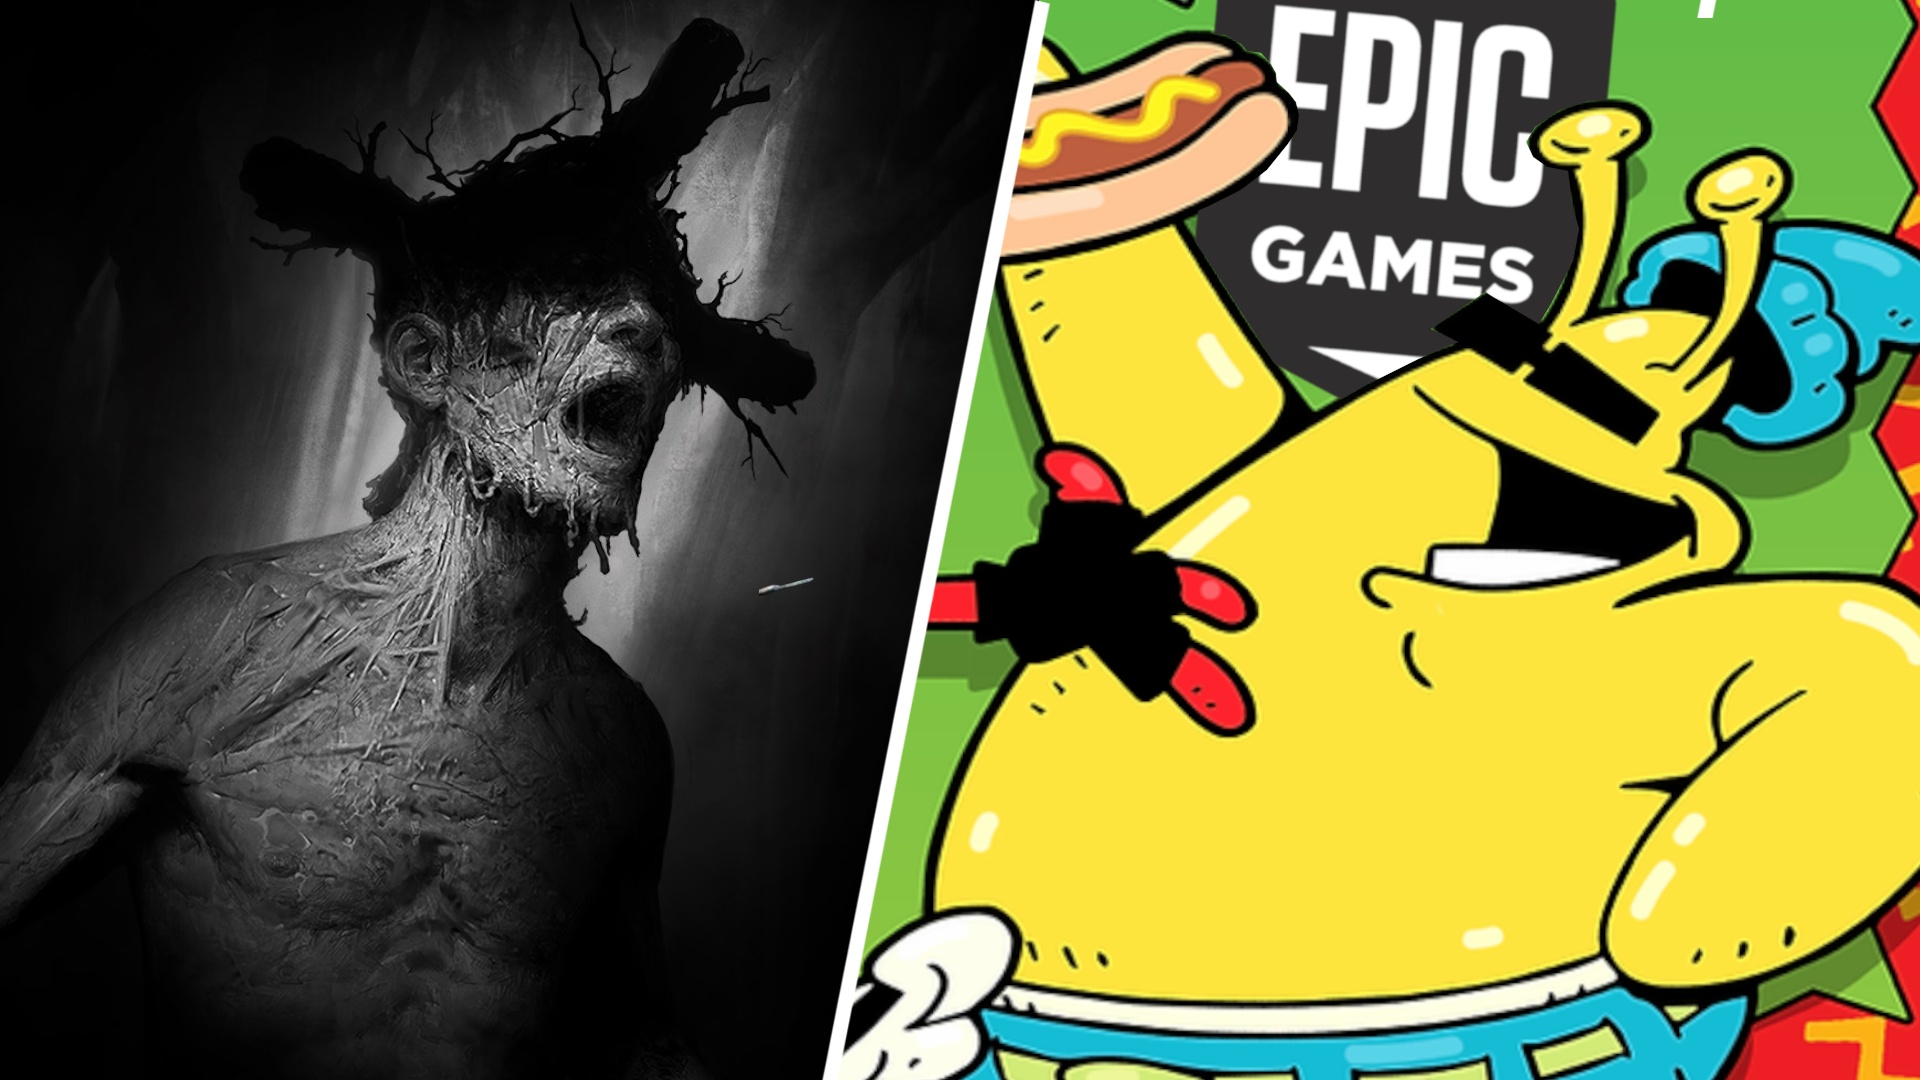 #Gratis bei Epic: Für wen lohnen sich die zwei kostenlosen Spiele?